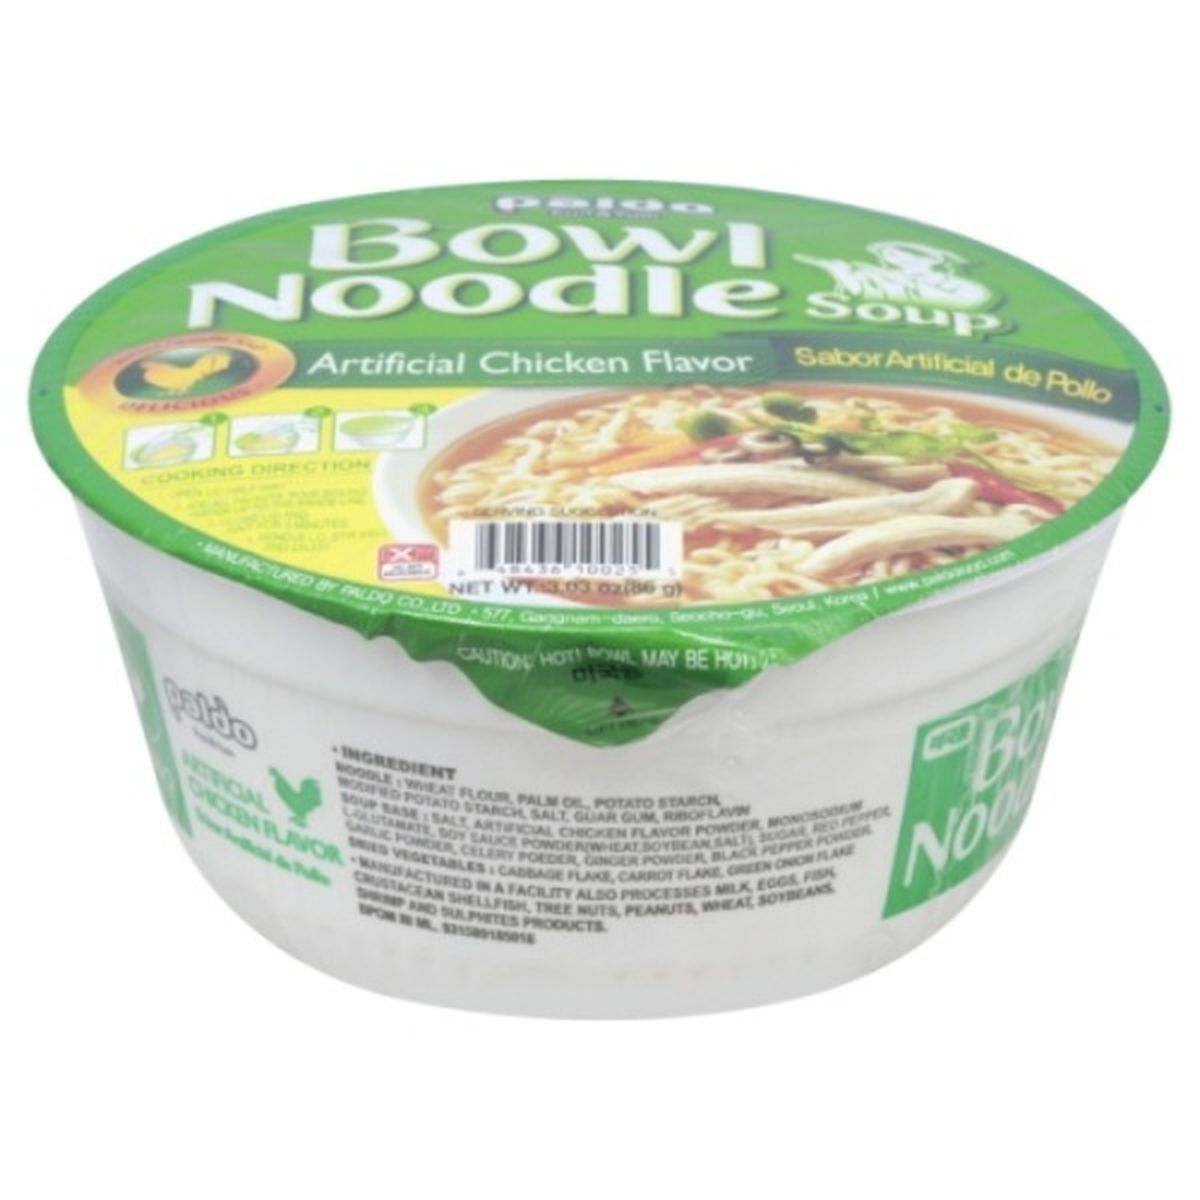 Calories in Paldo Soup, Bowl Noodle, Artificial Chicken Flavor